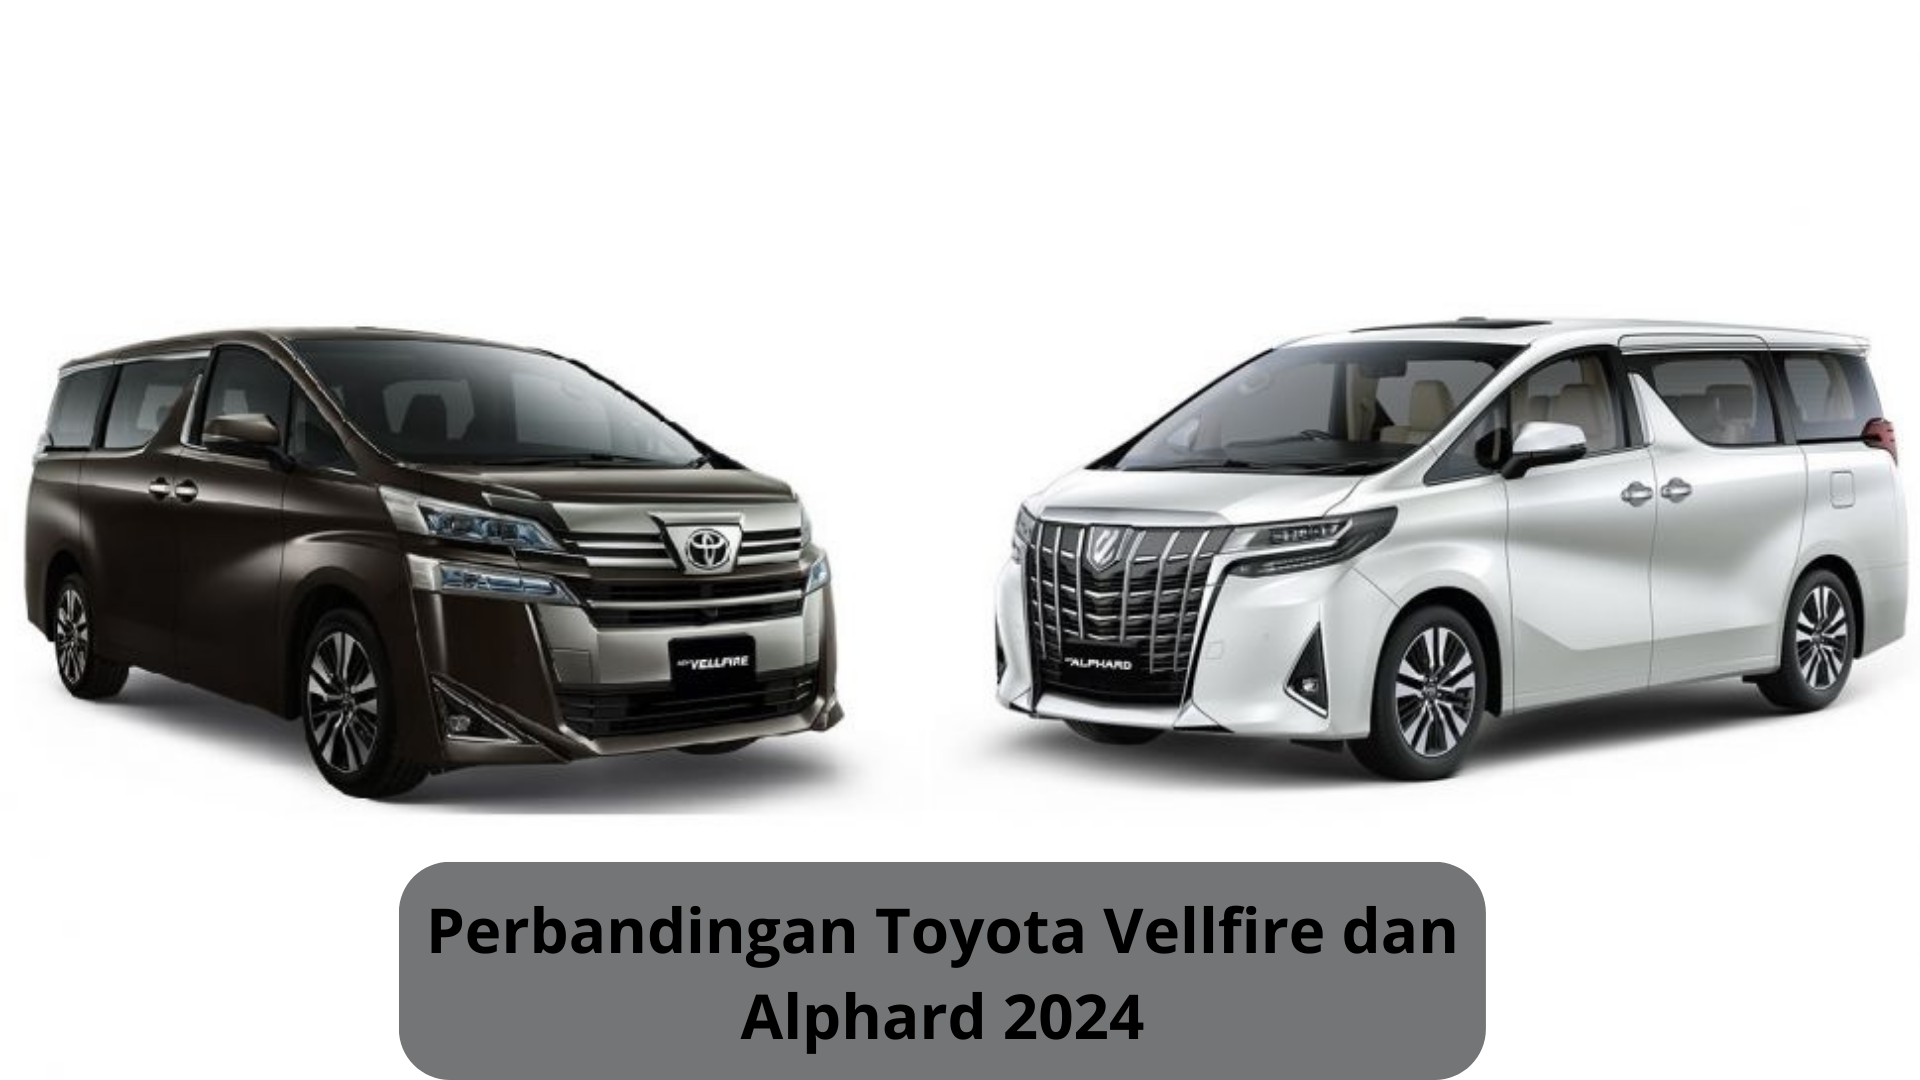 Perbandingan Toyota Vellfire dan Alphard 2024, SUV Mewah yang Siap Adu Kecanggihan